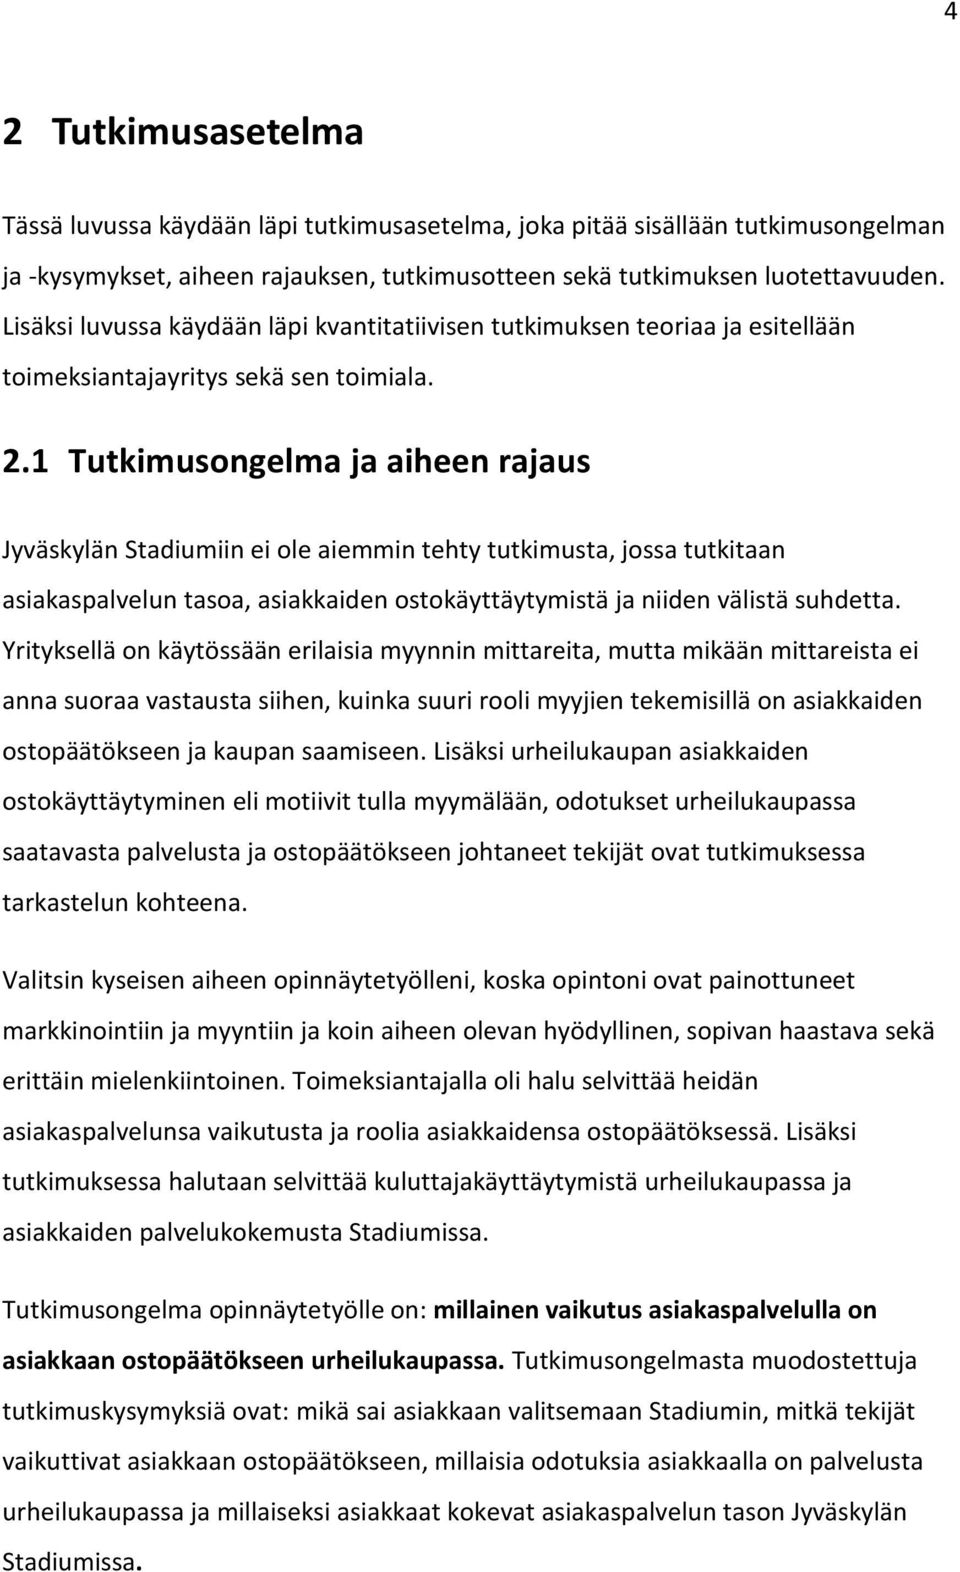 1 Tutkimusongelma ja aiheen rajaus Jyväskylän Stadiumiin ei ole aiemmin tehty tutkimusta, jossa tutkitaan asiakaspalvelun tasoa, asiakkaiden ostokäyttäytymistä ja niiden välistä suhdetta.